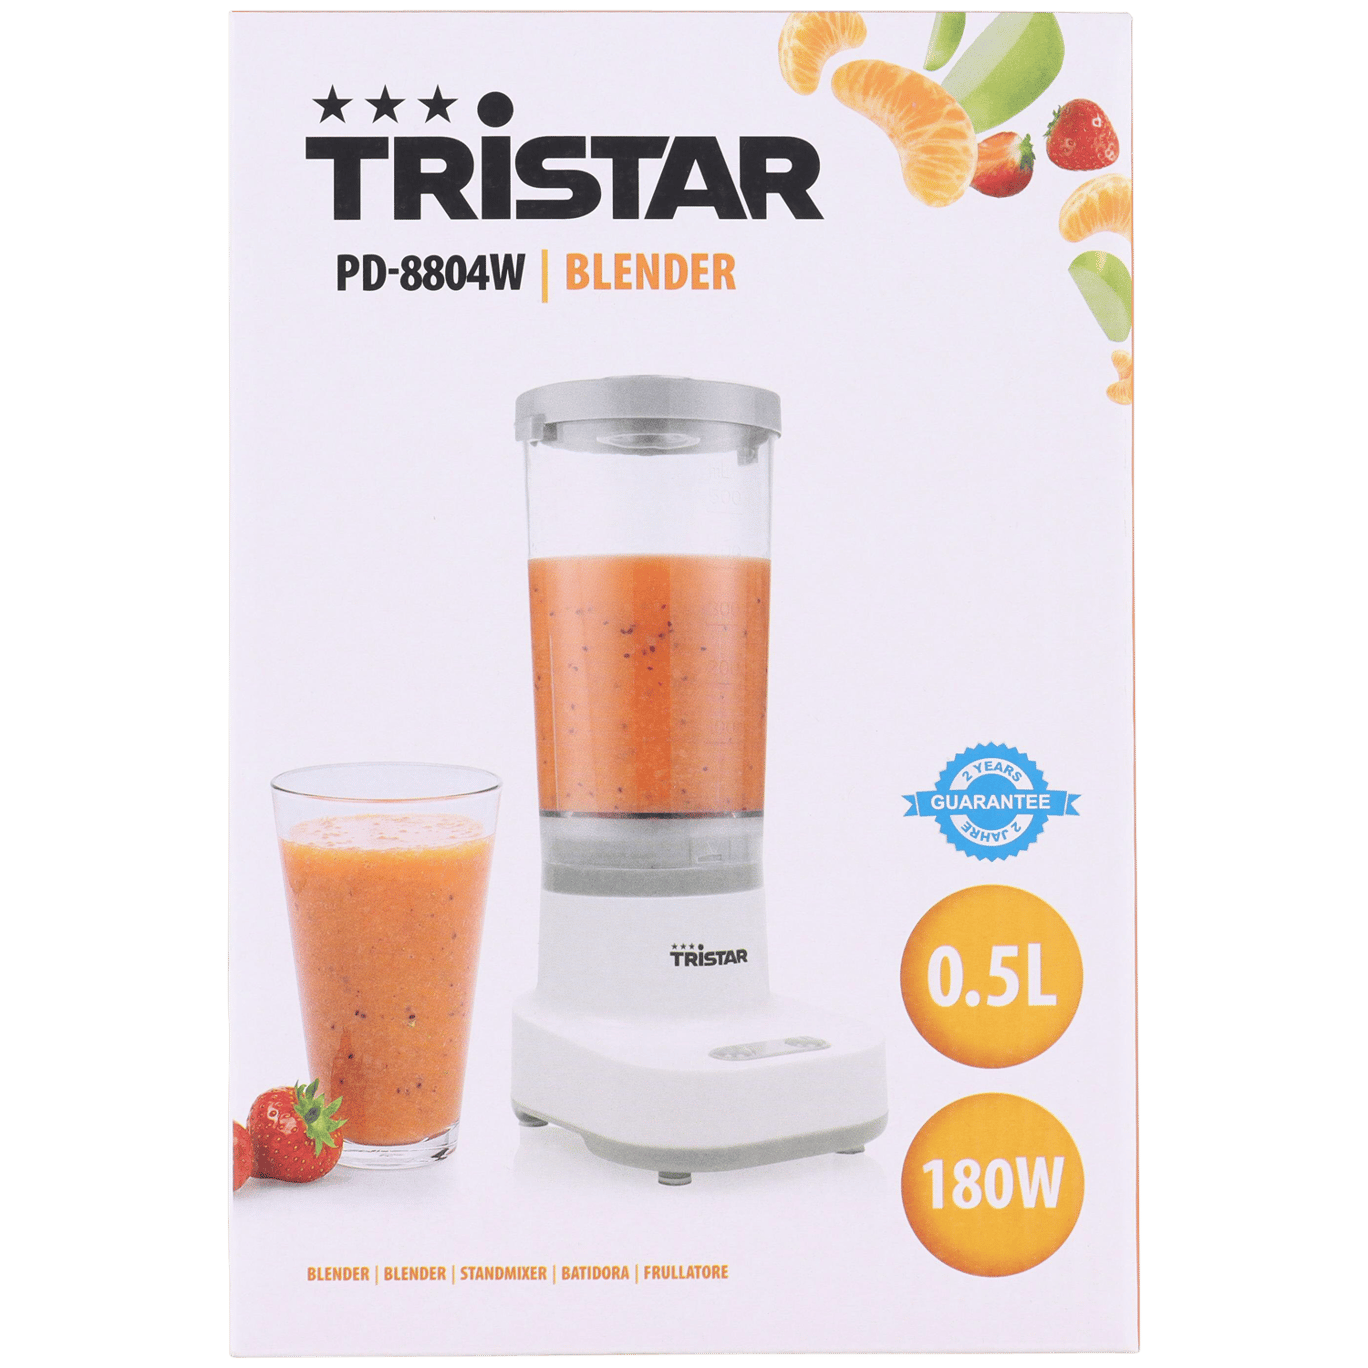 Tristar blender